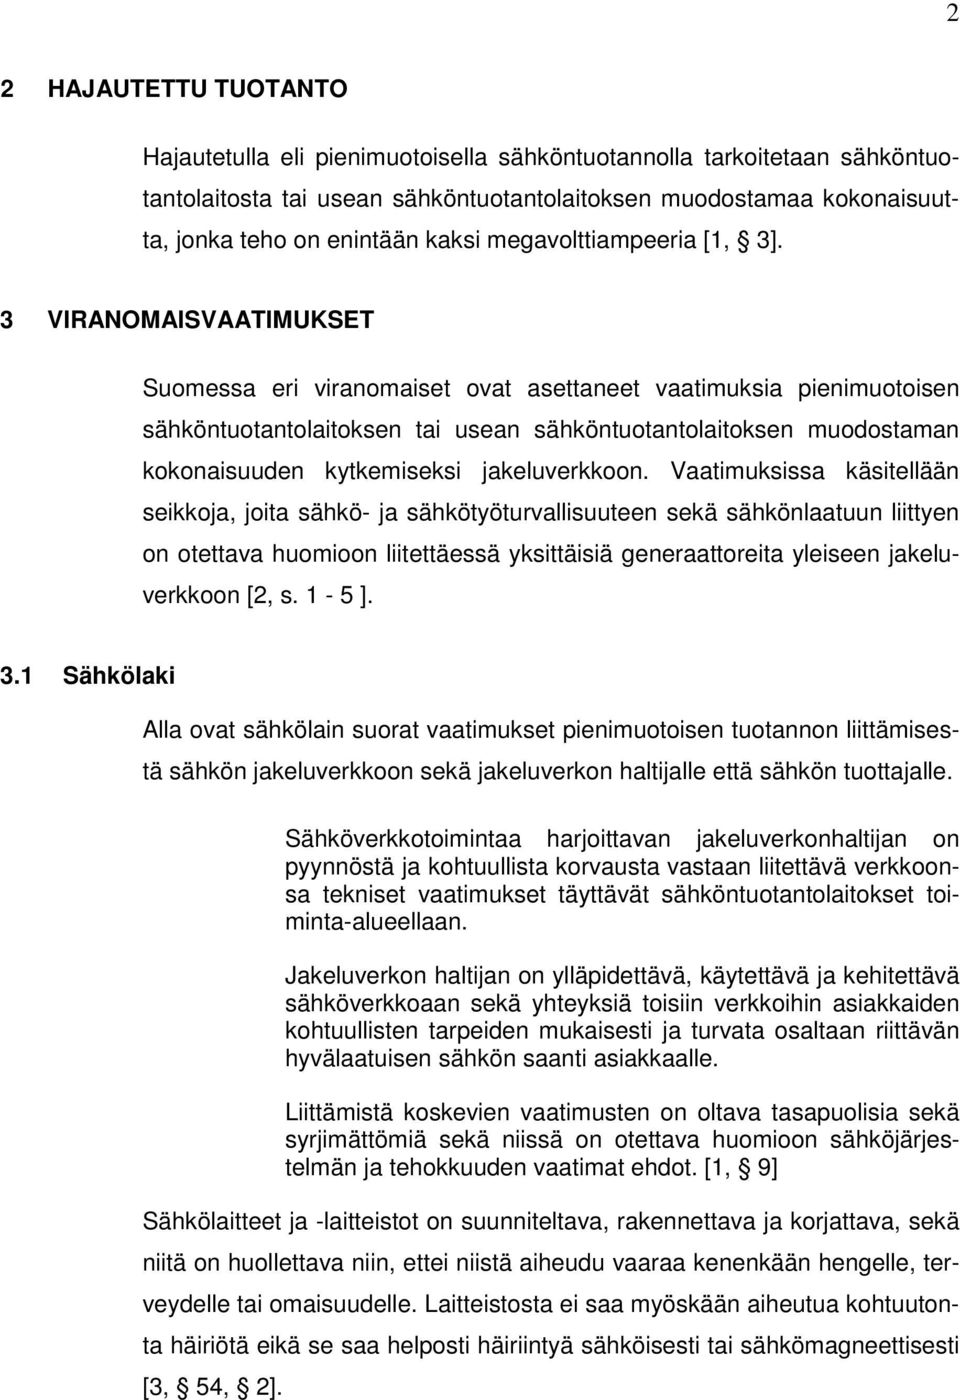 3 VIRANOMAISVAATIMUKSET Suomessa eri viranomaiset ovat asettaneet vaatimuksia pienimuotoisen sähköntuotantolaitoksen tai usean sähköntuotantolaitoksen muodostaman kokonaisuuden kytkemiseksi